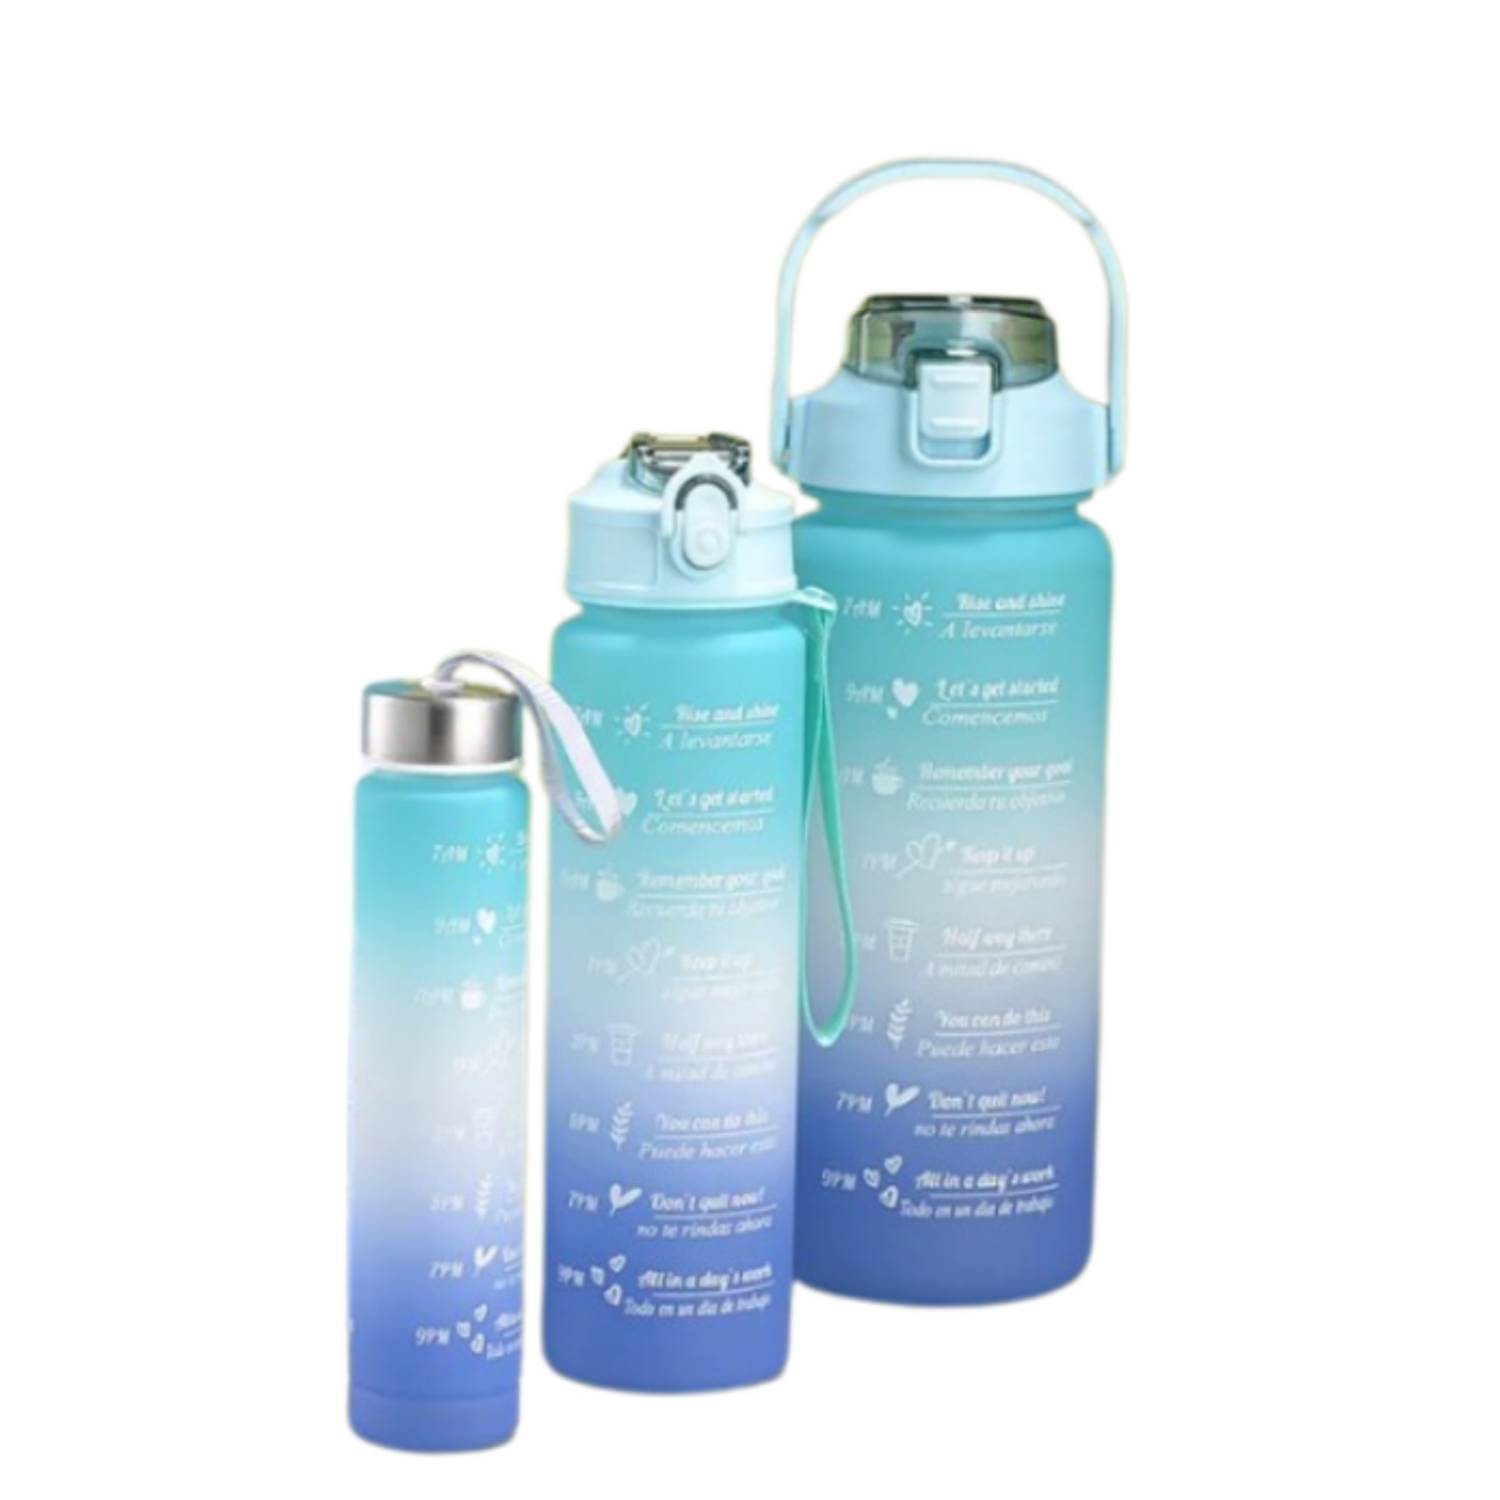 Products with Free Delivery Termo Botella De Agua Motivacional X3 Con  Stickers l – e siete company s.a.s., termo de agua 